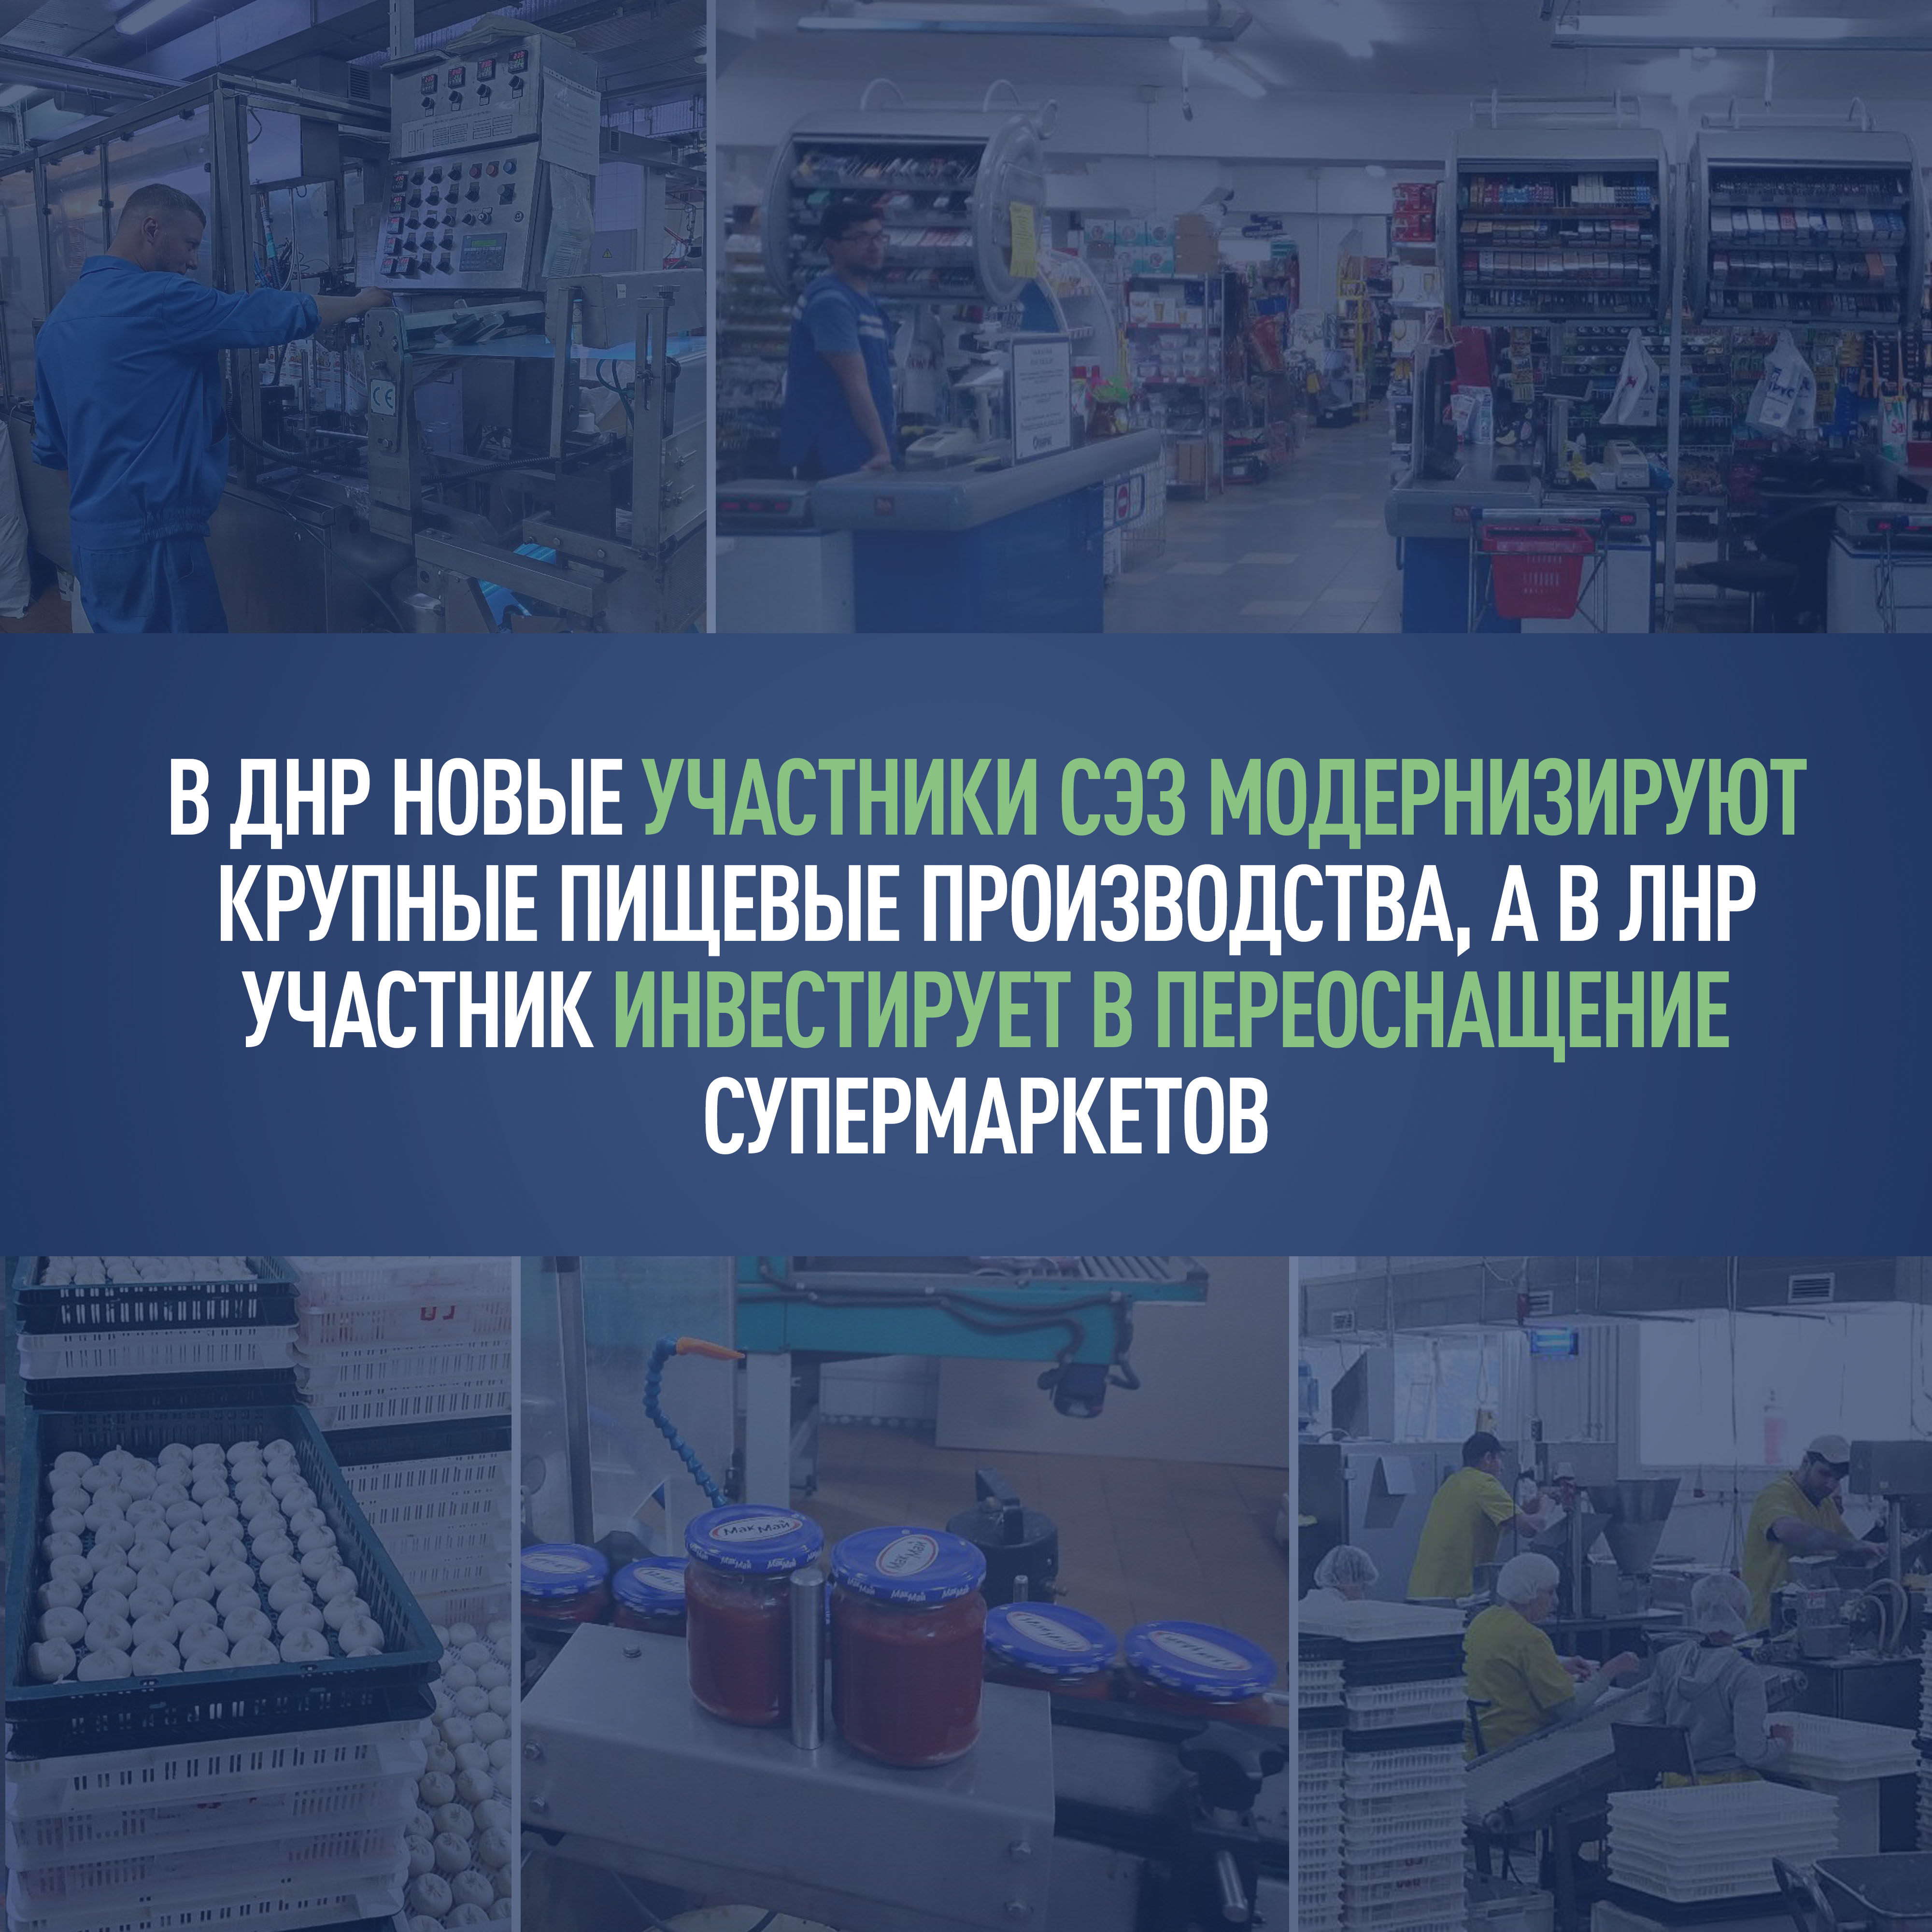 В ДНР новые участники СЭЗ модернизируют крупные пищевые производства, а в ЛНР участник инвестирует в переоснащение супермаркетов